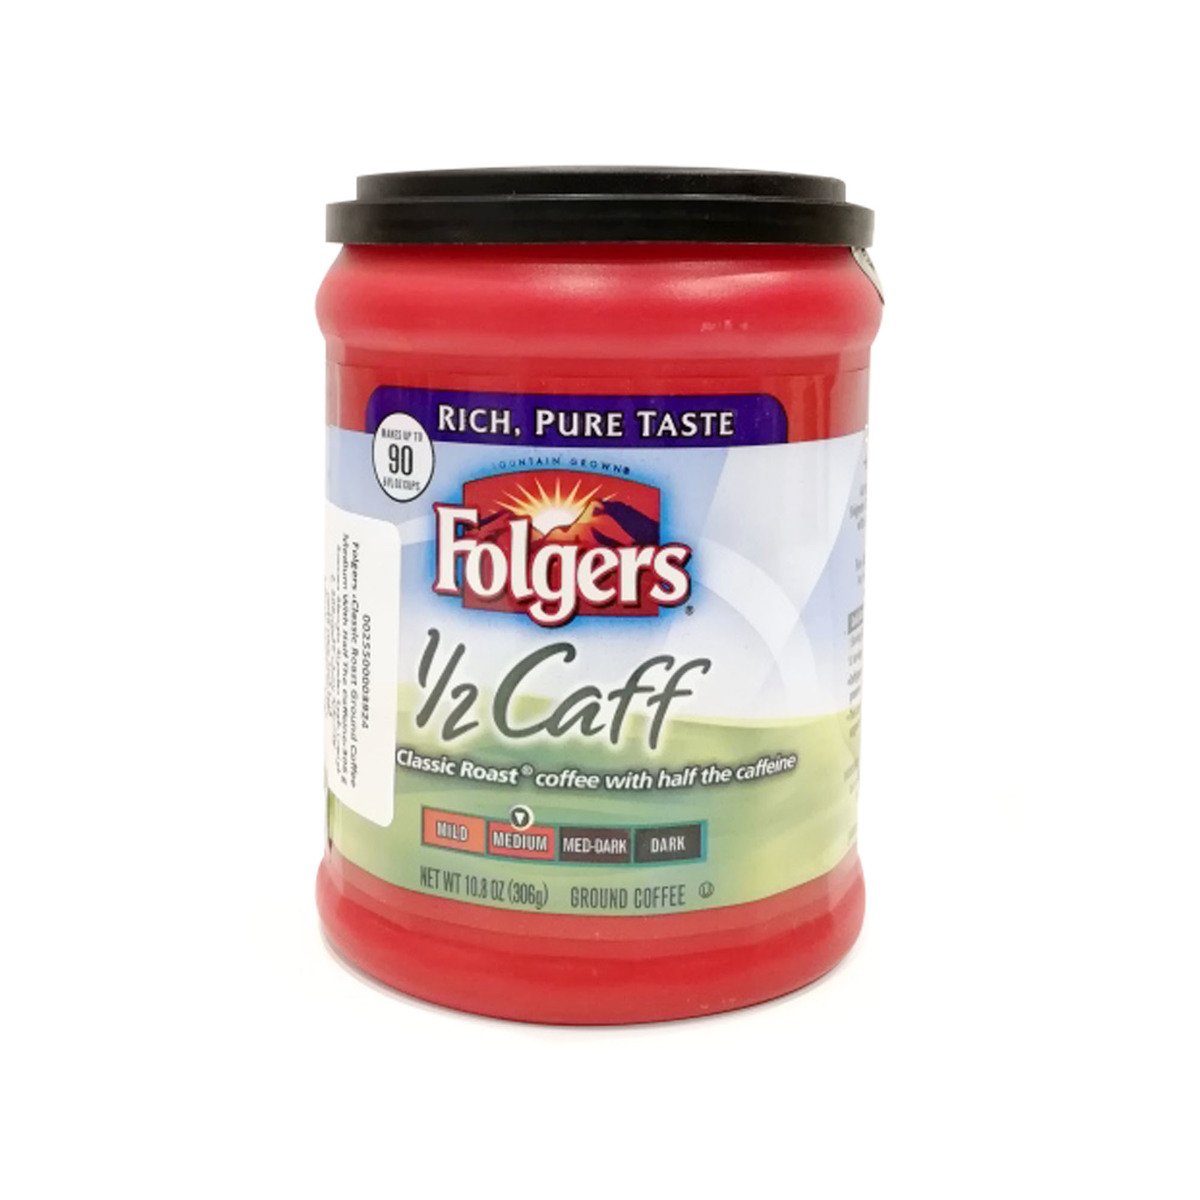 Folgers 1/2 Caff Classic Roast 306 g